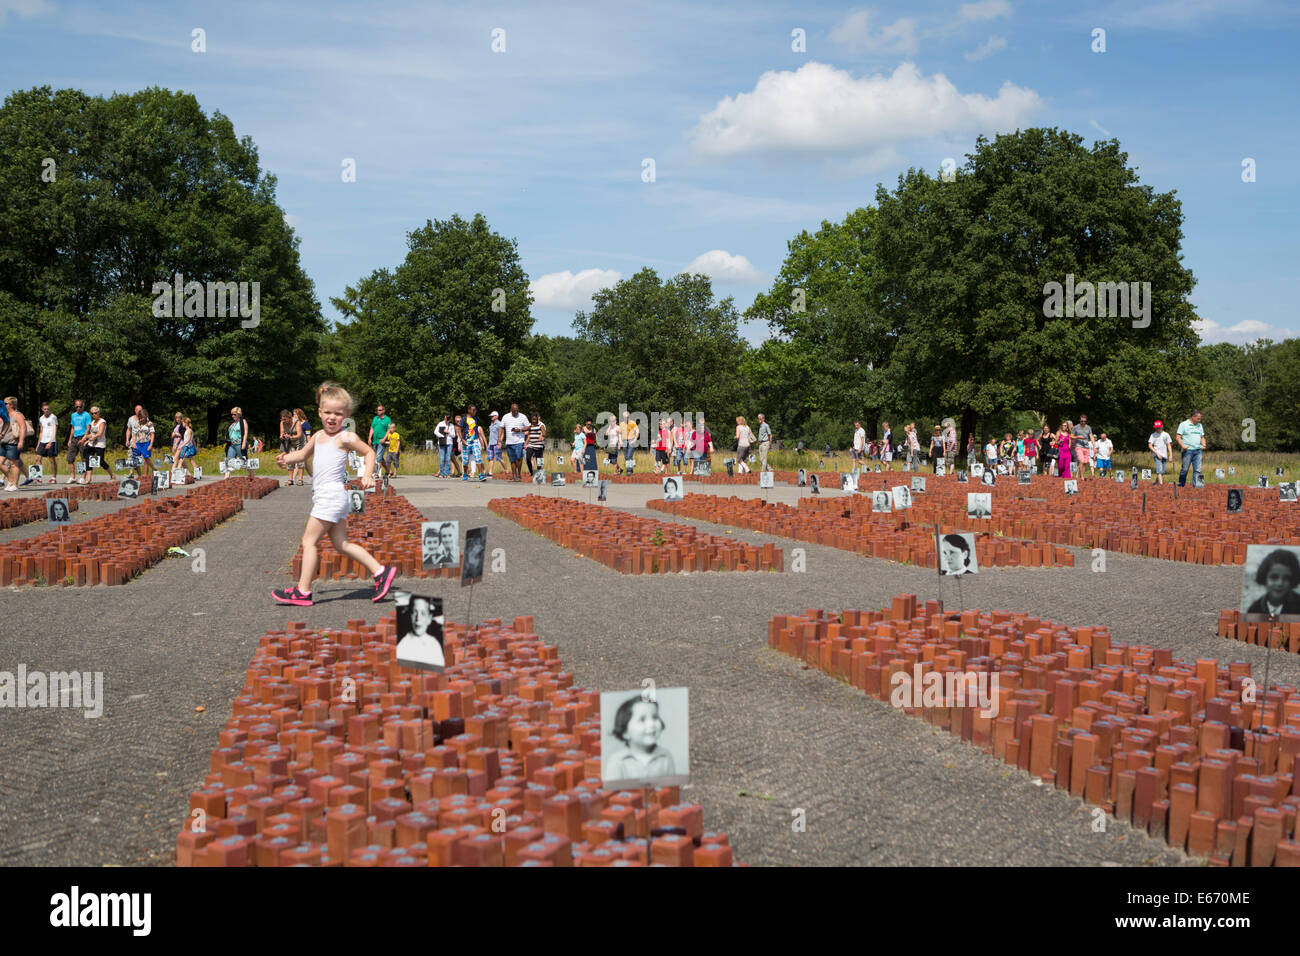 Visitatori presso l'ex campo di concentramento sito 'kamp westerbork' con innocenti bambini in esecuzione nei Paesi Bassi Foto Stock